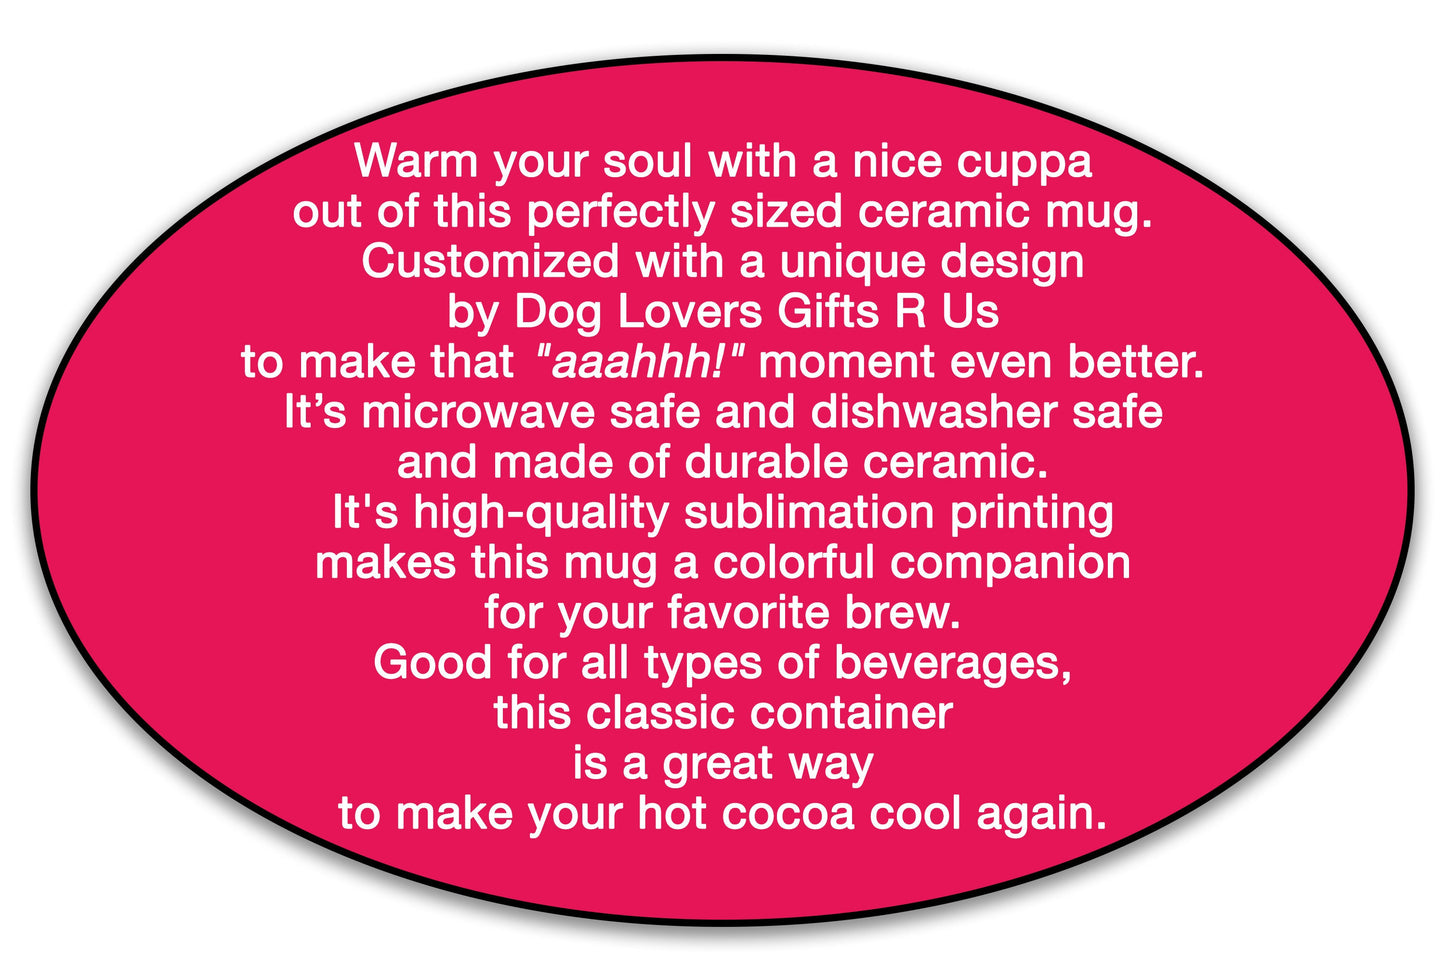 French Bulldog Every Snack You Make Dog Coffee Mug, Ceramic Mug, Funny Mug Gifts for Him, Dog Mug, Printed Mug, Dad Mug, Gift for Dog Mom